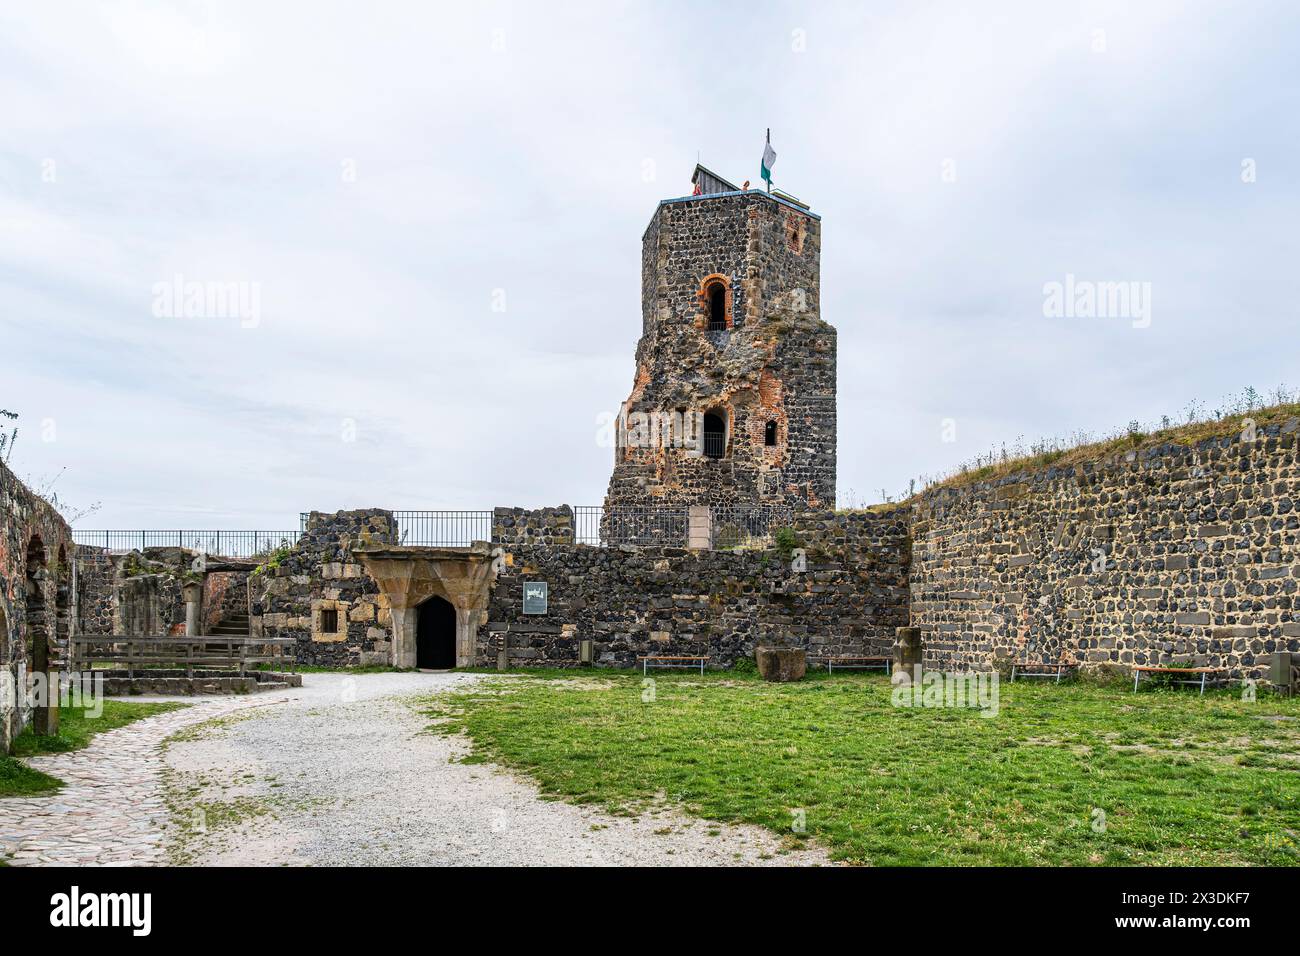 Schloss Stolpen, Teilruine einer mittelalterlichen Hügelburg, später ein Schloss und eine Festung, gegründet auf dem Basaltberg von Stolpen, Sachsen. Stockfoto